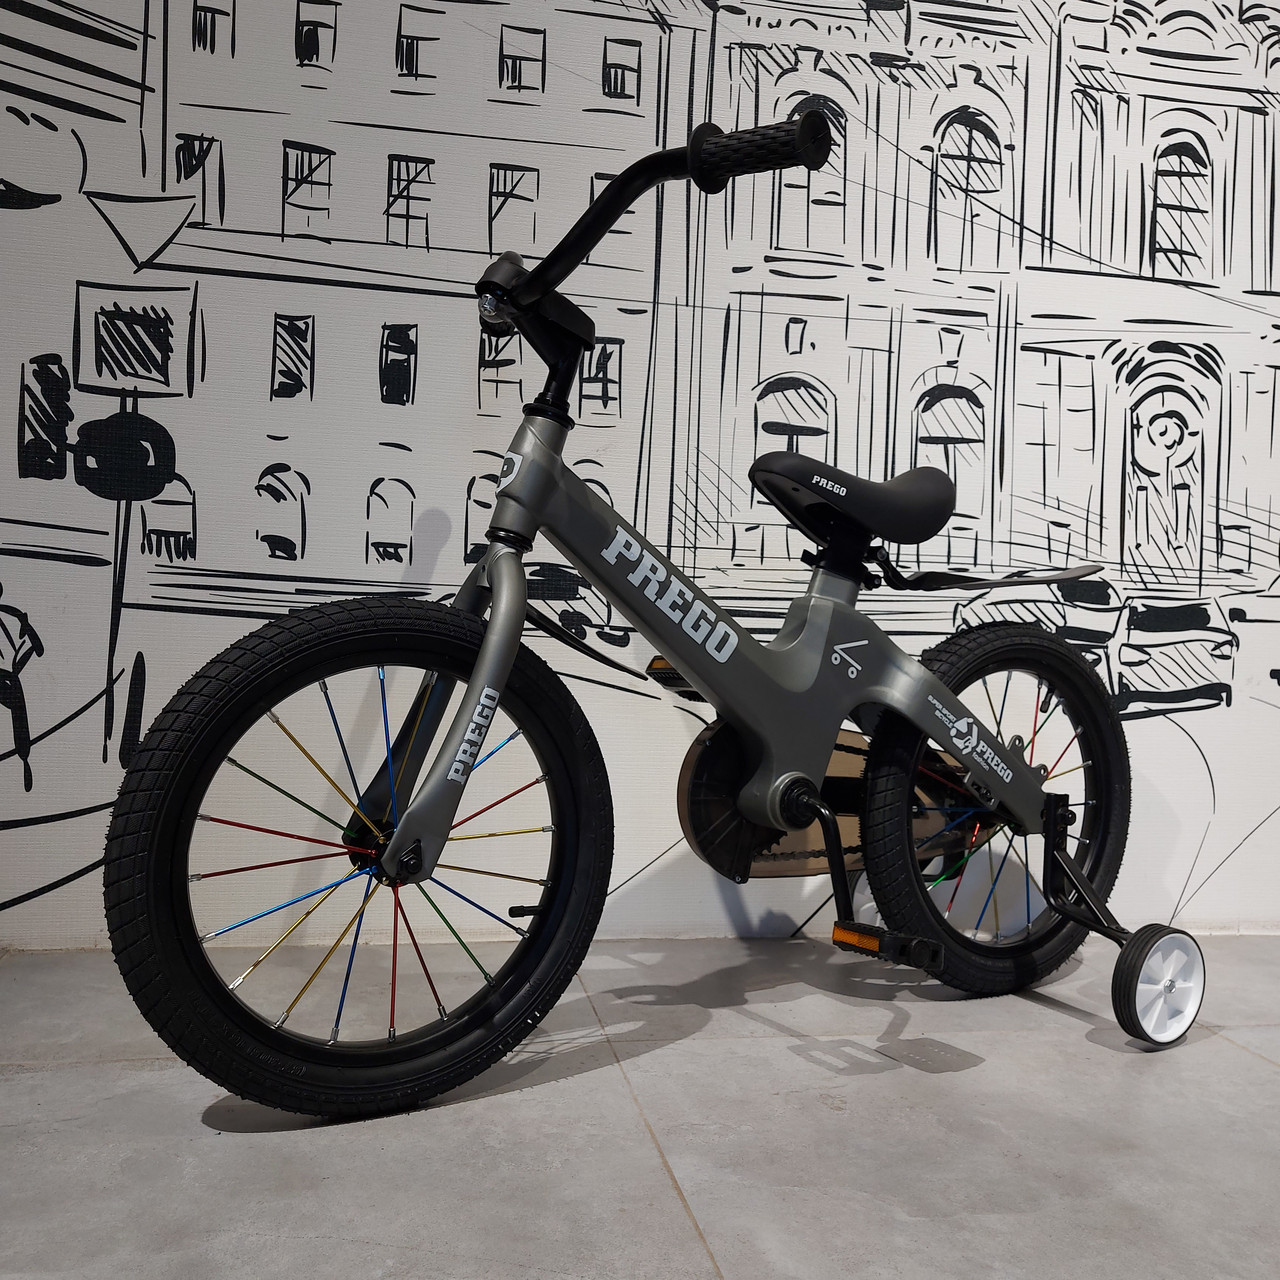 Детский двухколесный велосипед "Prego". Версия 2.0. 16" колеса. С боковыми колесиками. Серый.